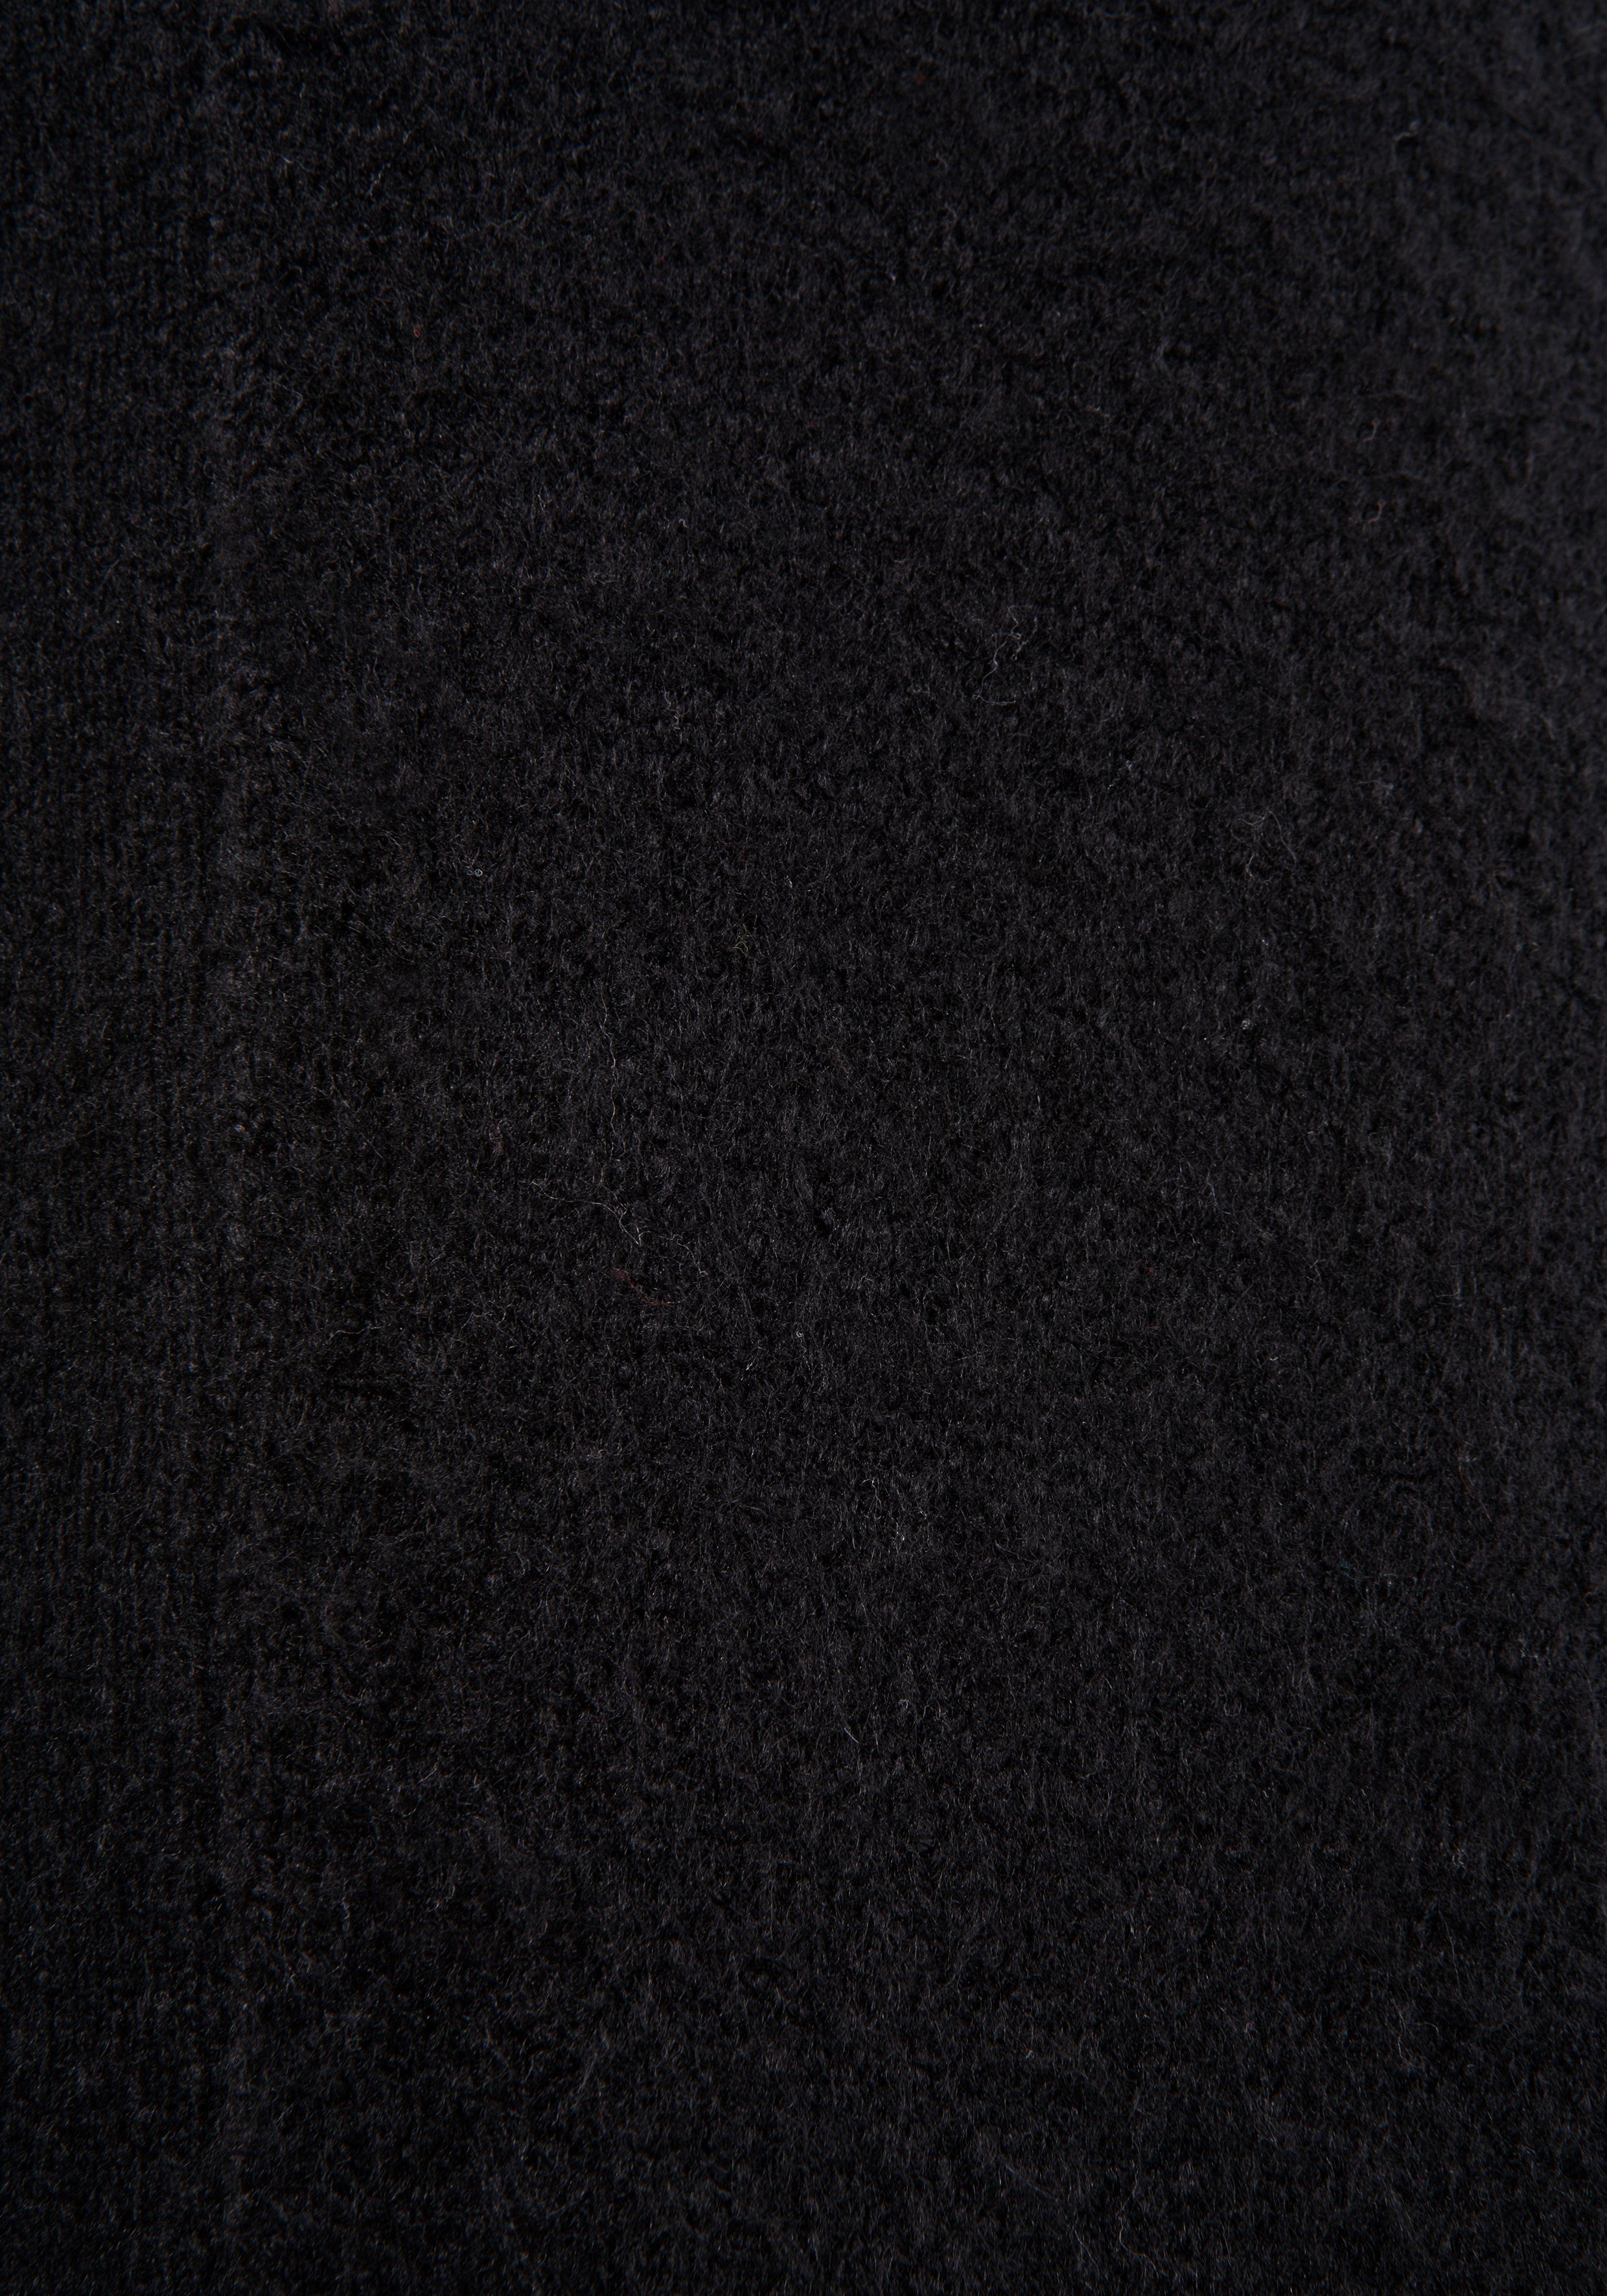 Longstrickjacke kuscheliger schwarz Laura aus Scott Strickqualität